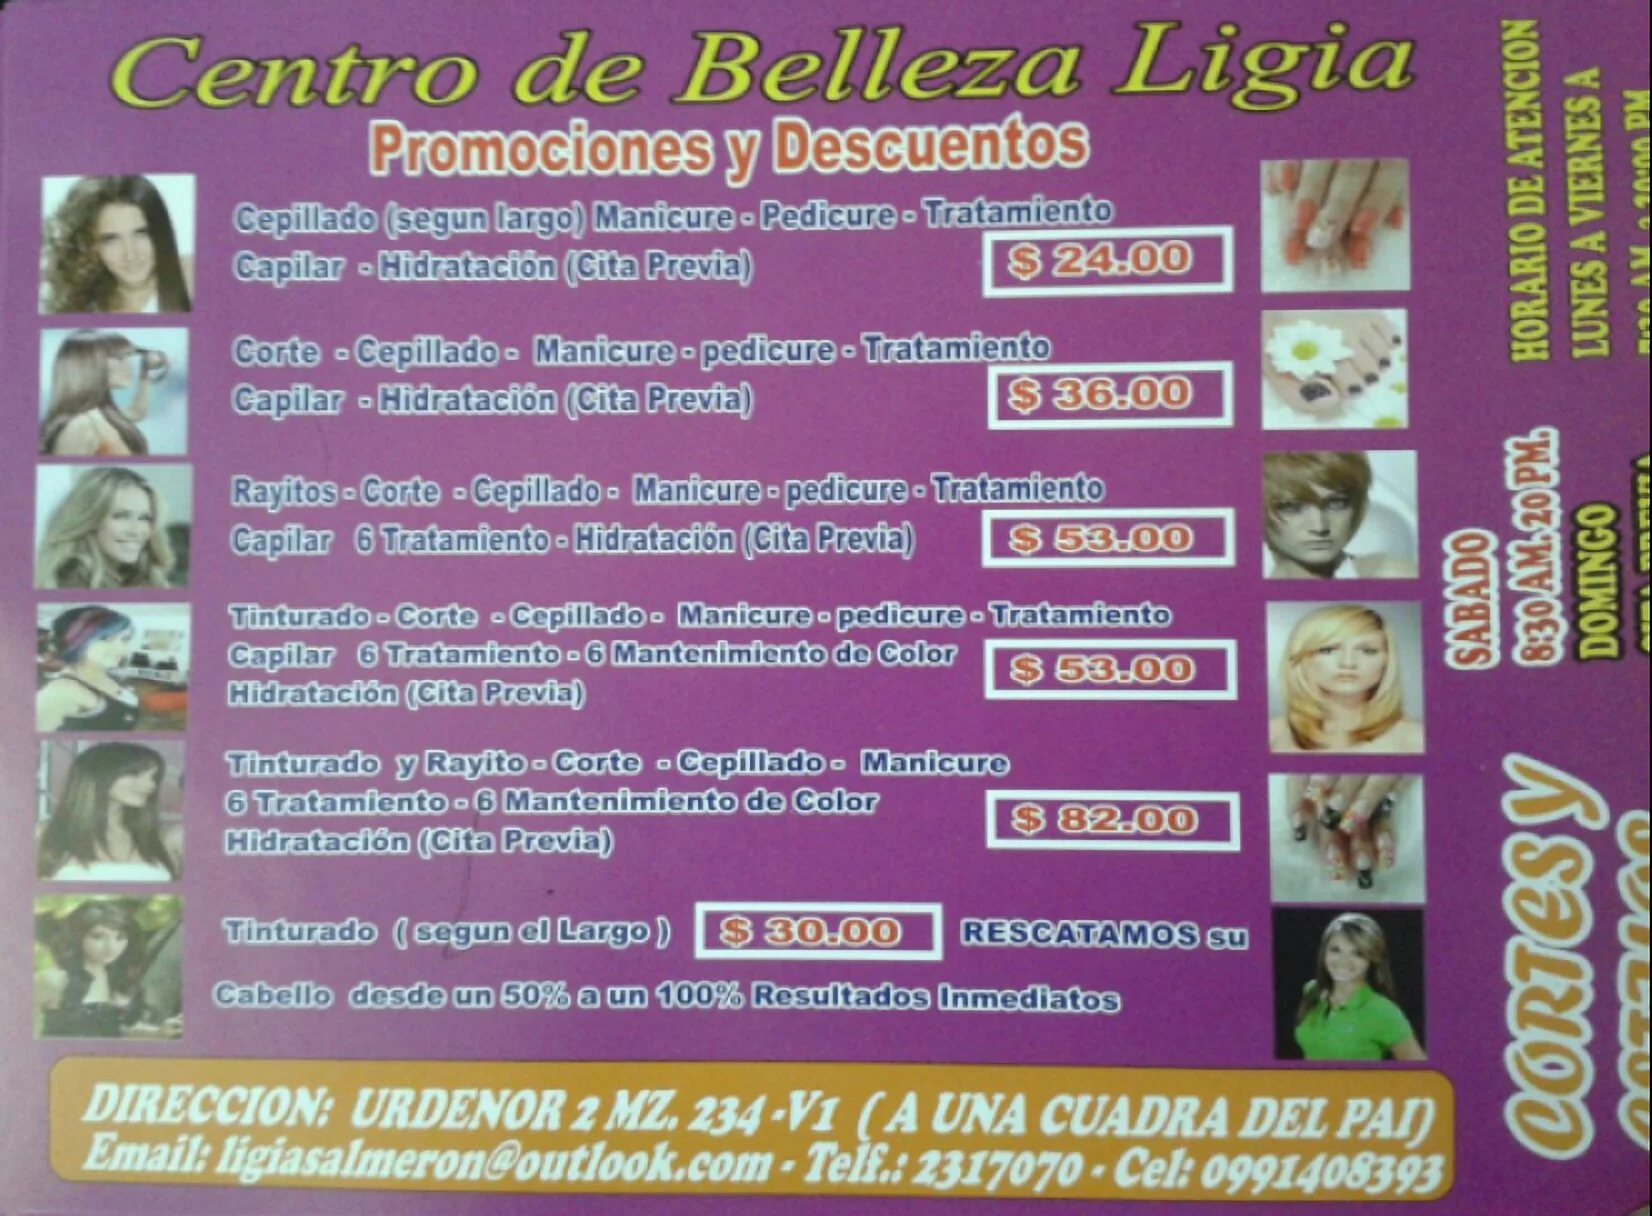 Centro Belleza Ligia-1282